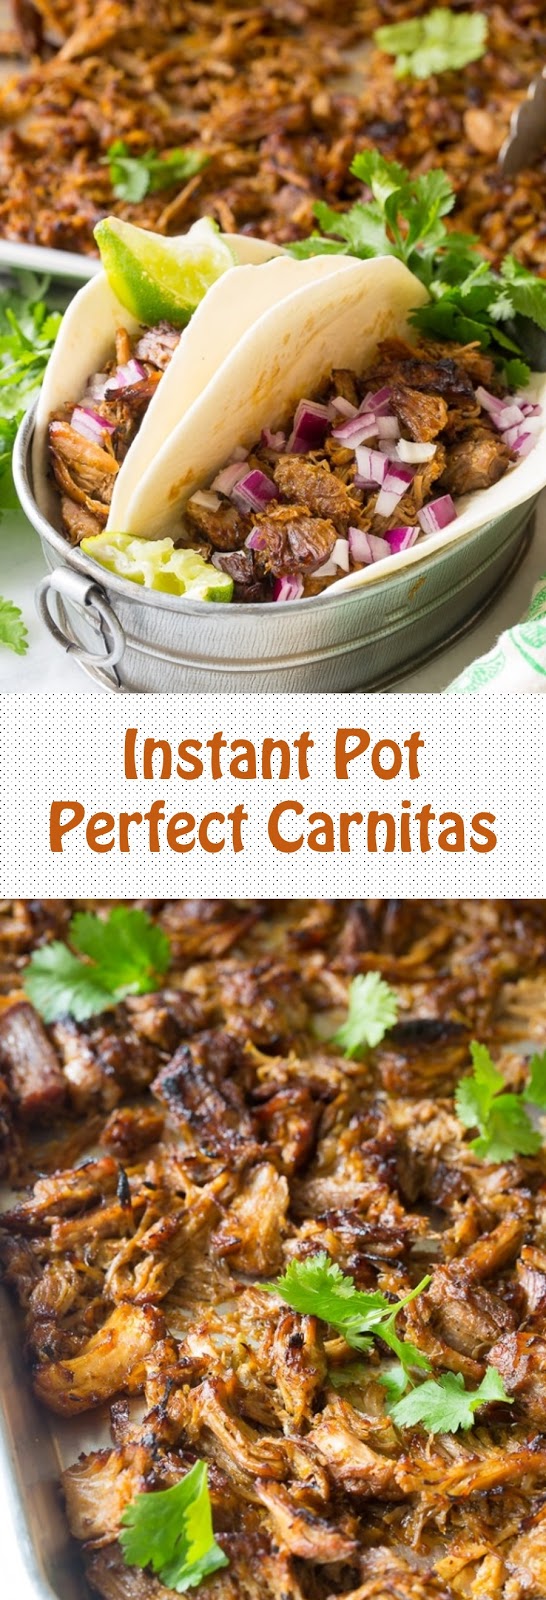 Instant Pot Perfect Carnitas